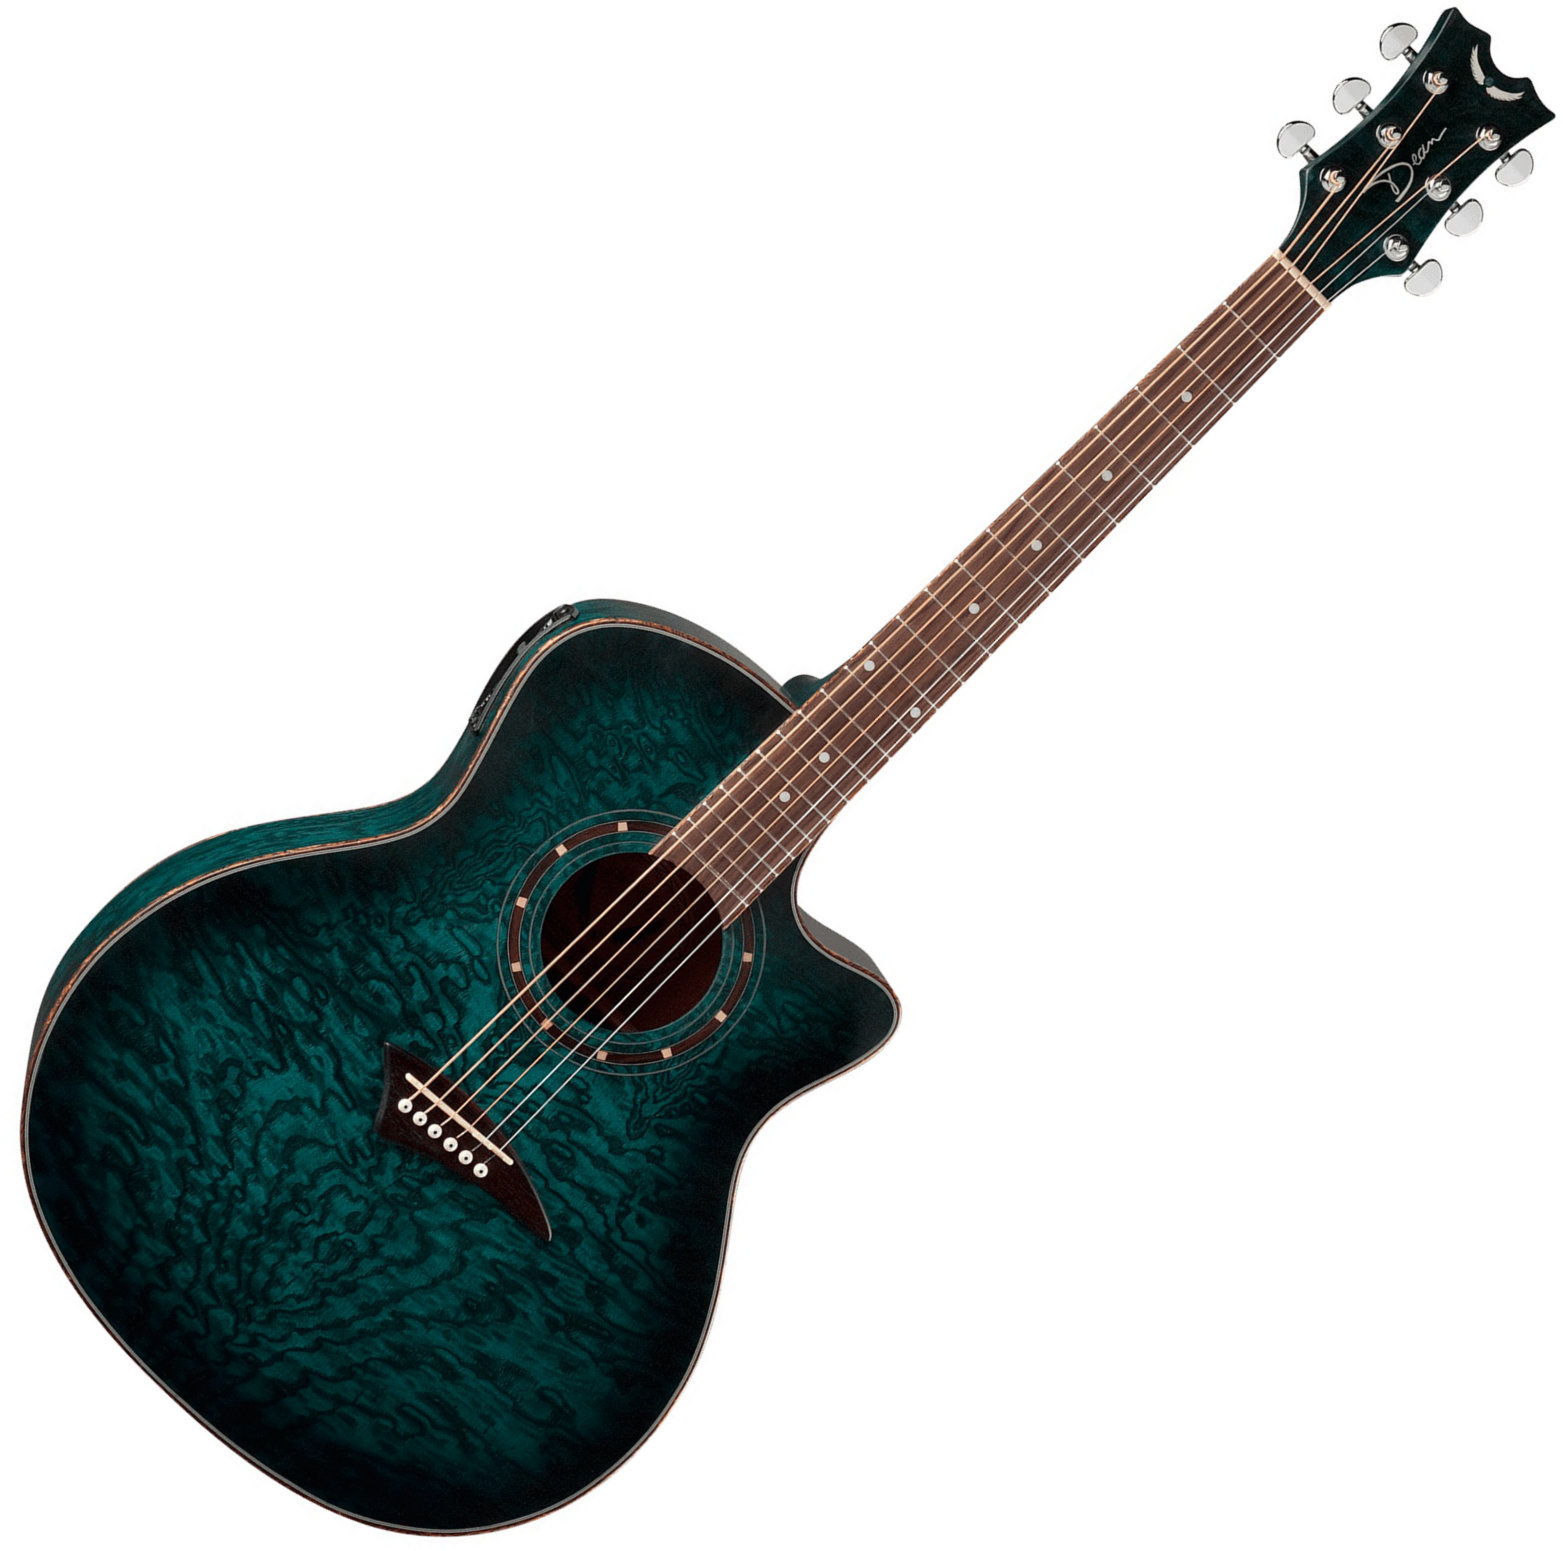 Ηλεκτροακουστική Κιθάρα Jumbo Dean Guitars Exotica Quilt Ash A/E - Trans Blue Satin